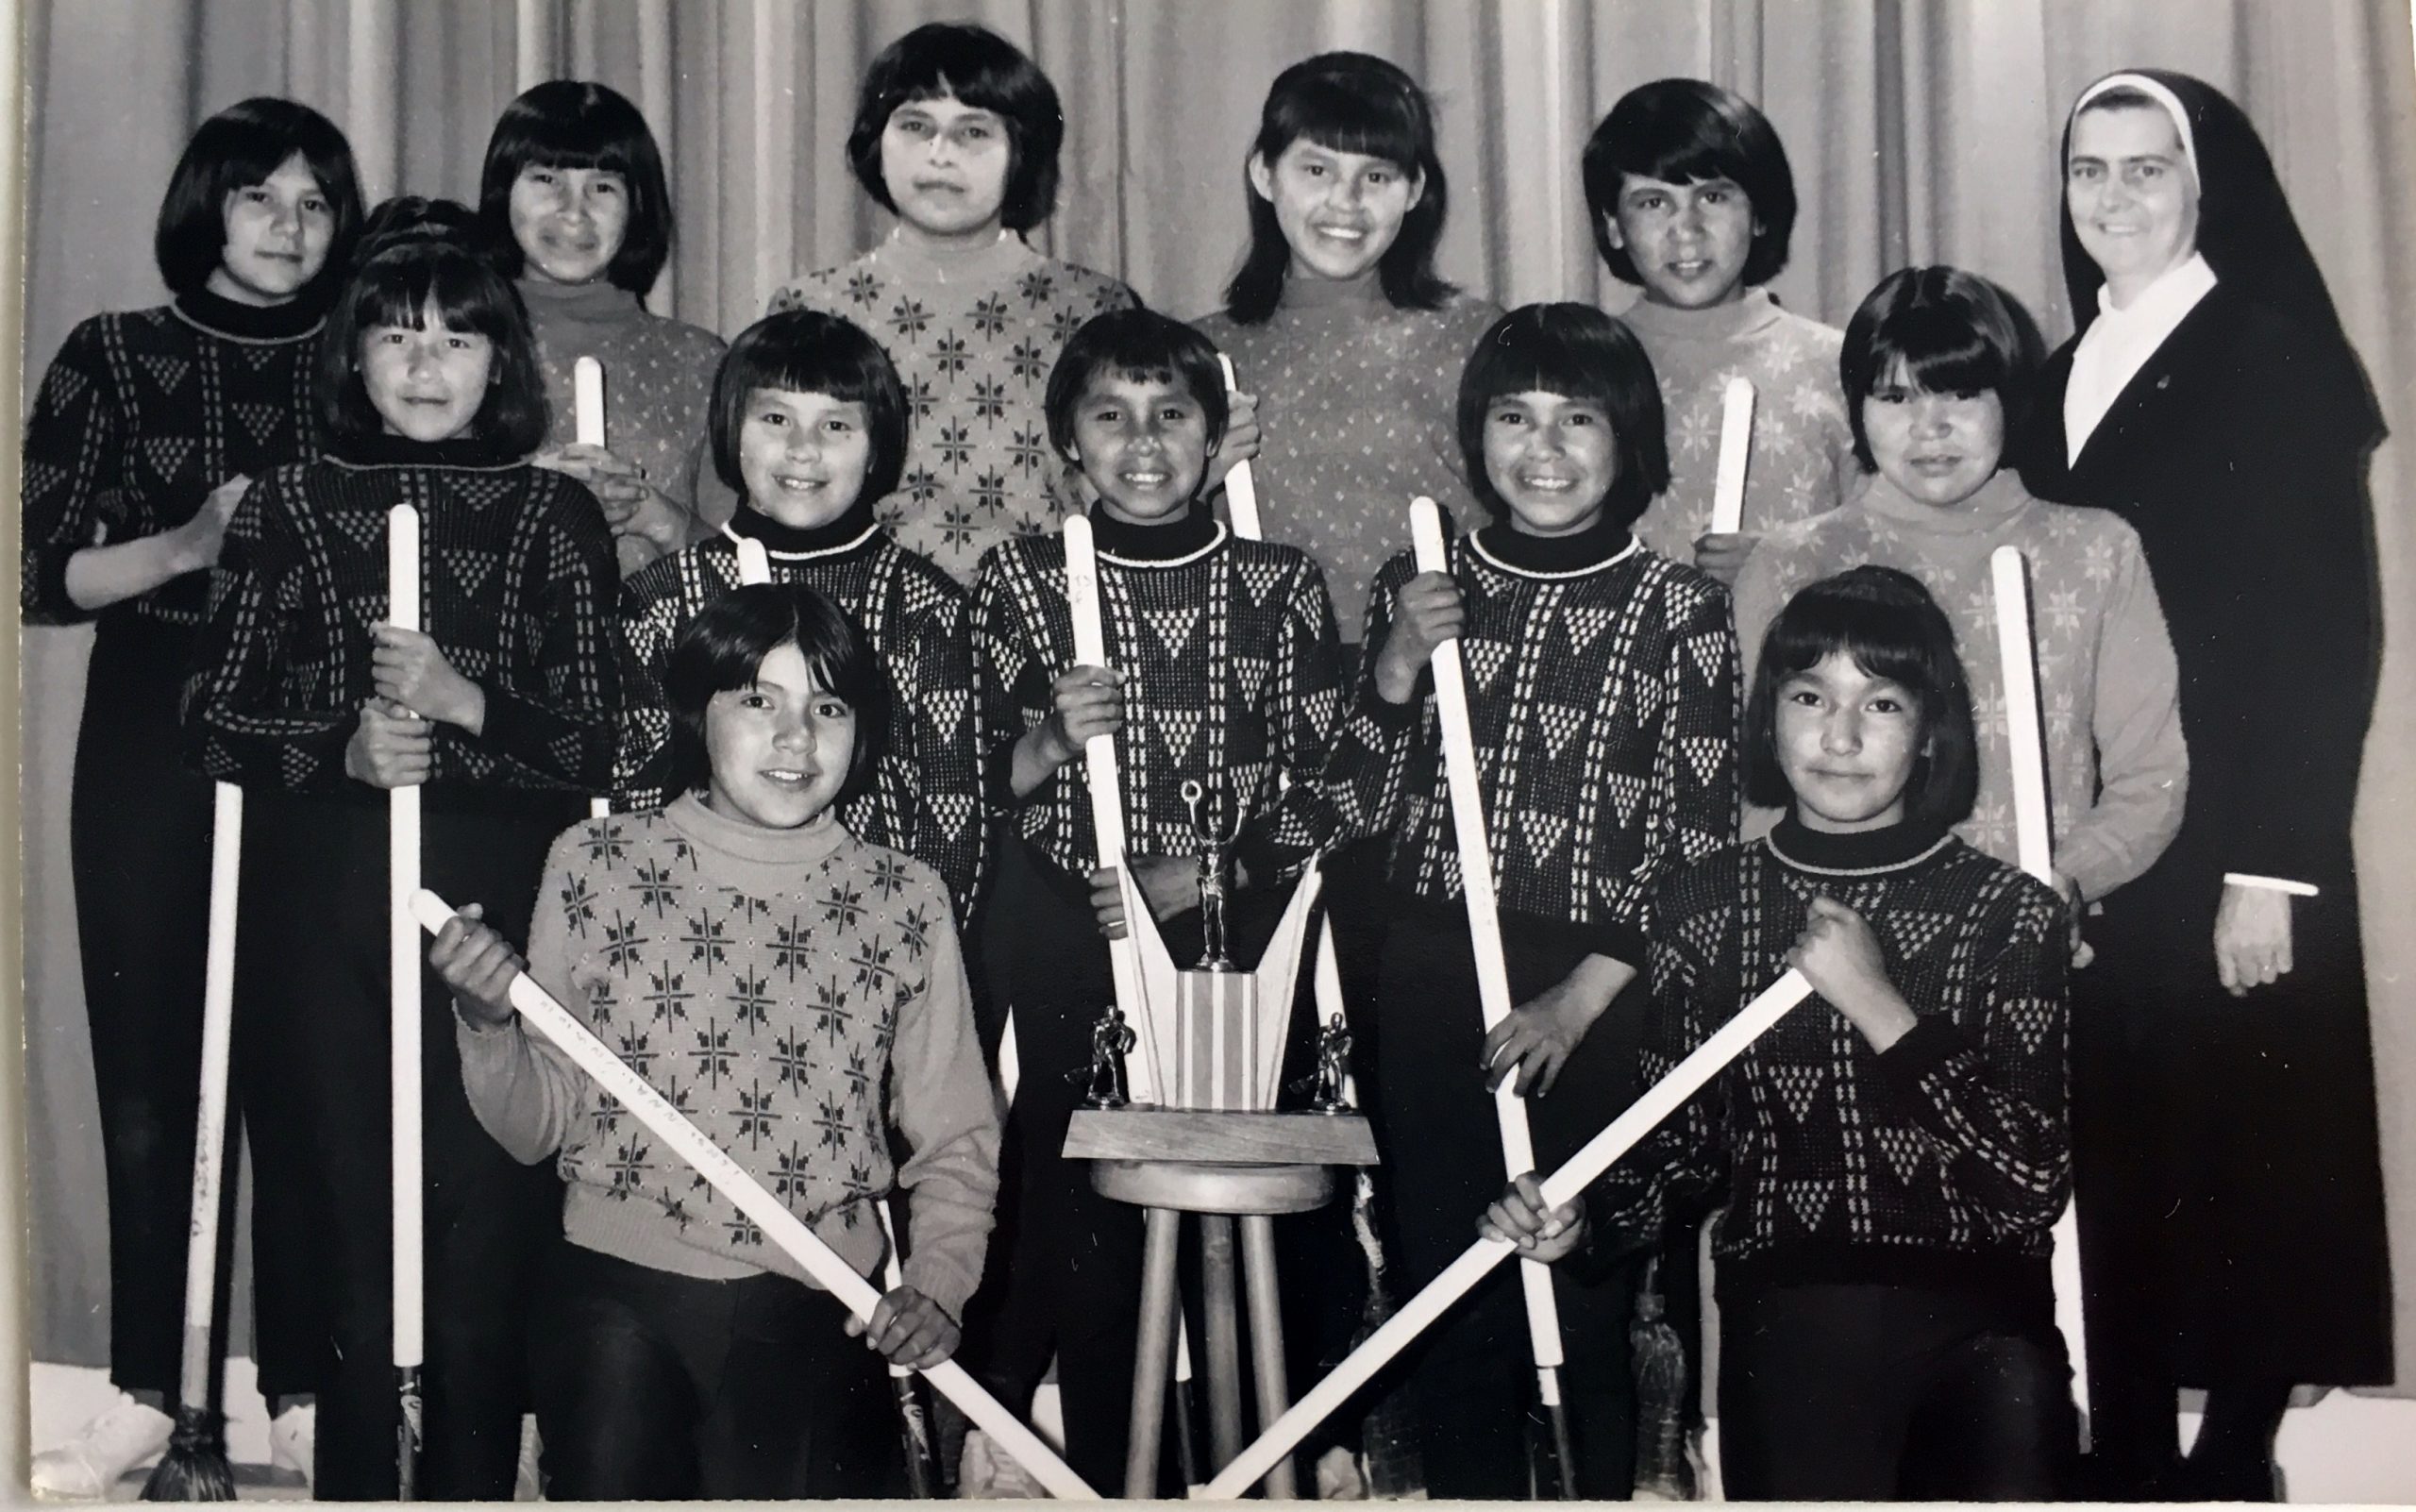 Une équipe féminine de ballon balais au pensionnat d'Amos. Chacune d'elle tient son bâton dans ses mains. Un trophée est au milieu du groupe et une soeur se trouve sur la droite.